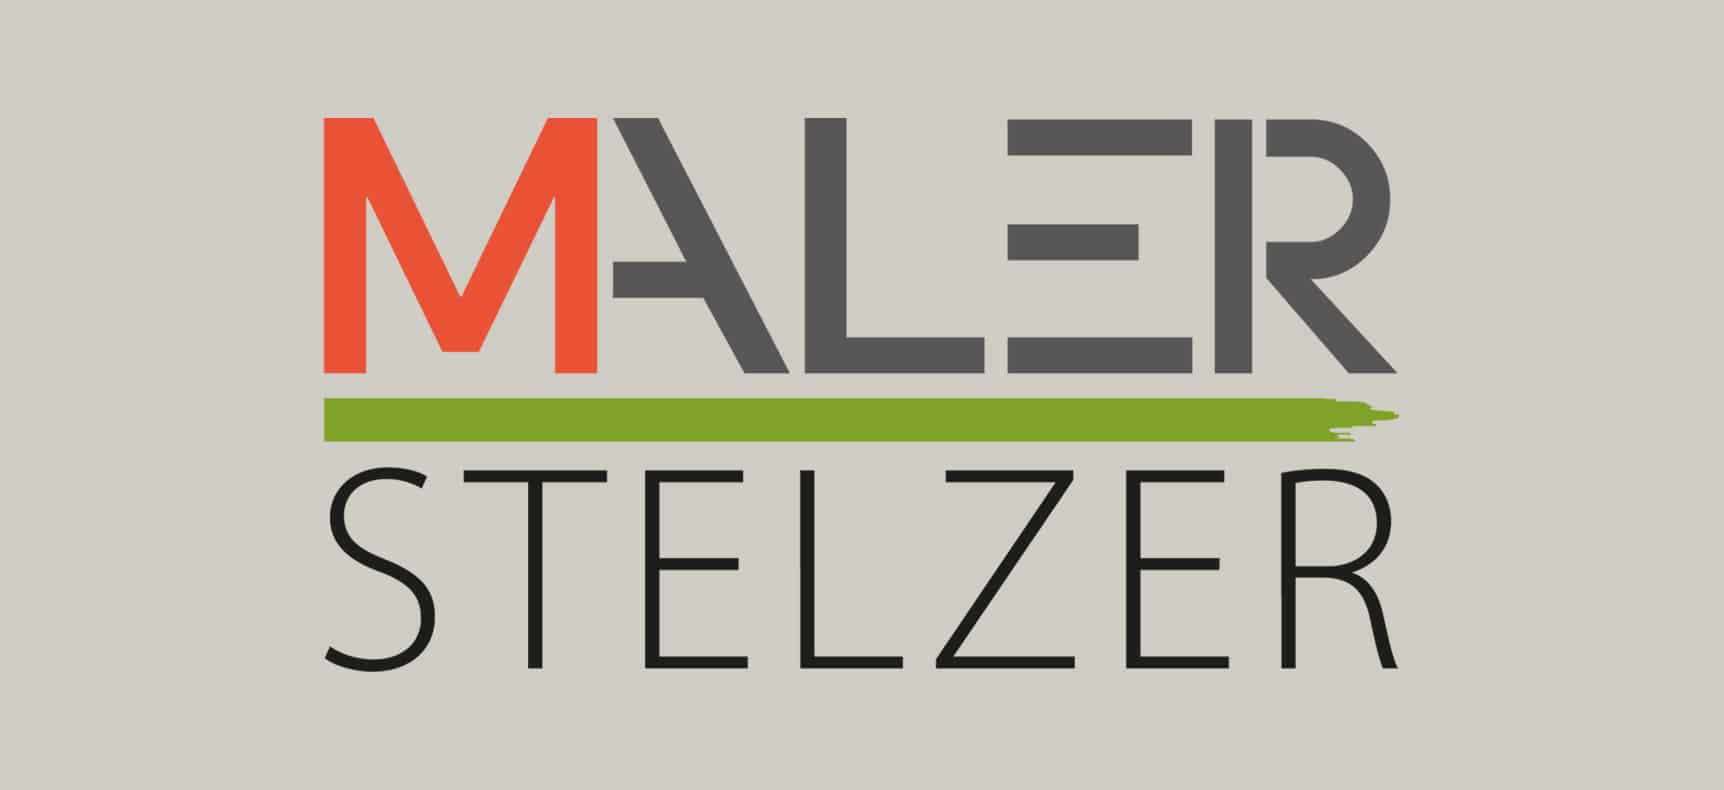 Maler Stelzer | Logo erstellt von StatusZwo.com